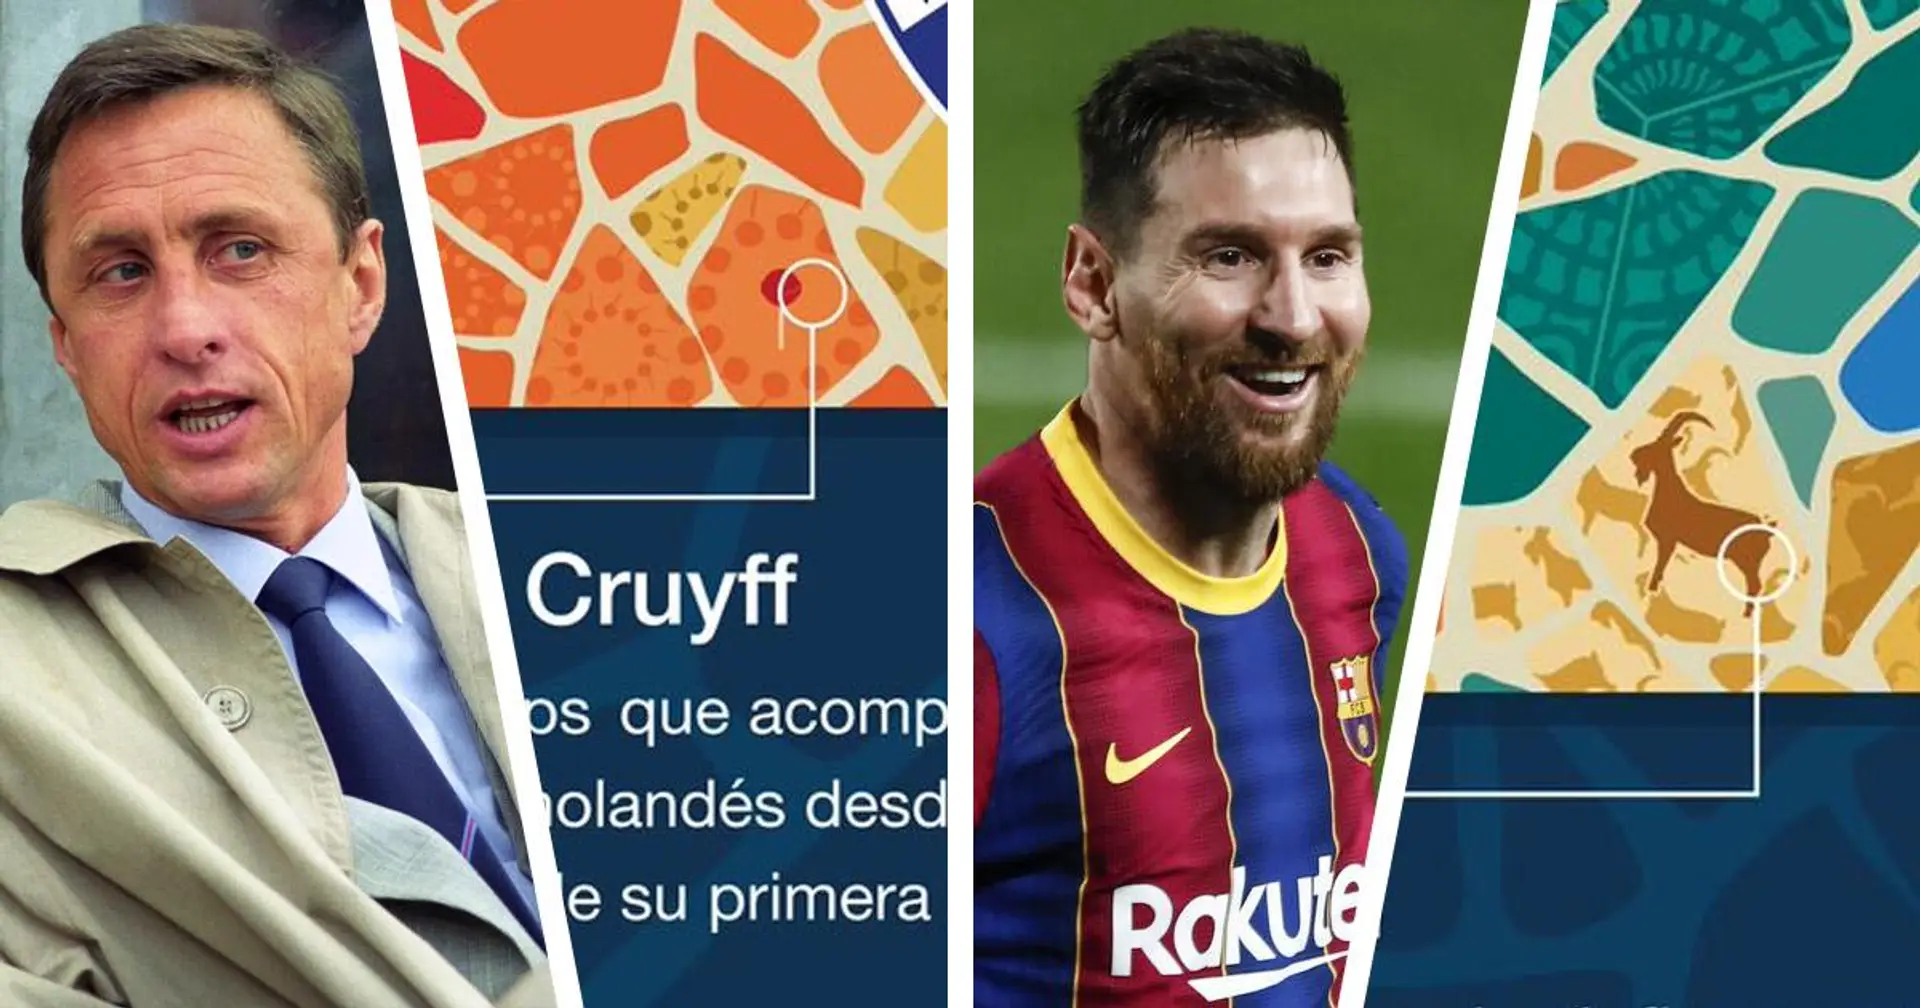 L'attention portée à Messi, hommage à Cruyff et plus: Huesca prépare un brassard de capitaine spécial pour le voyage à Barcelone